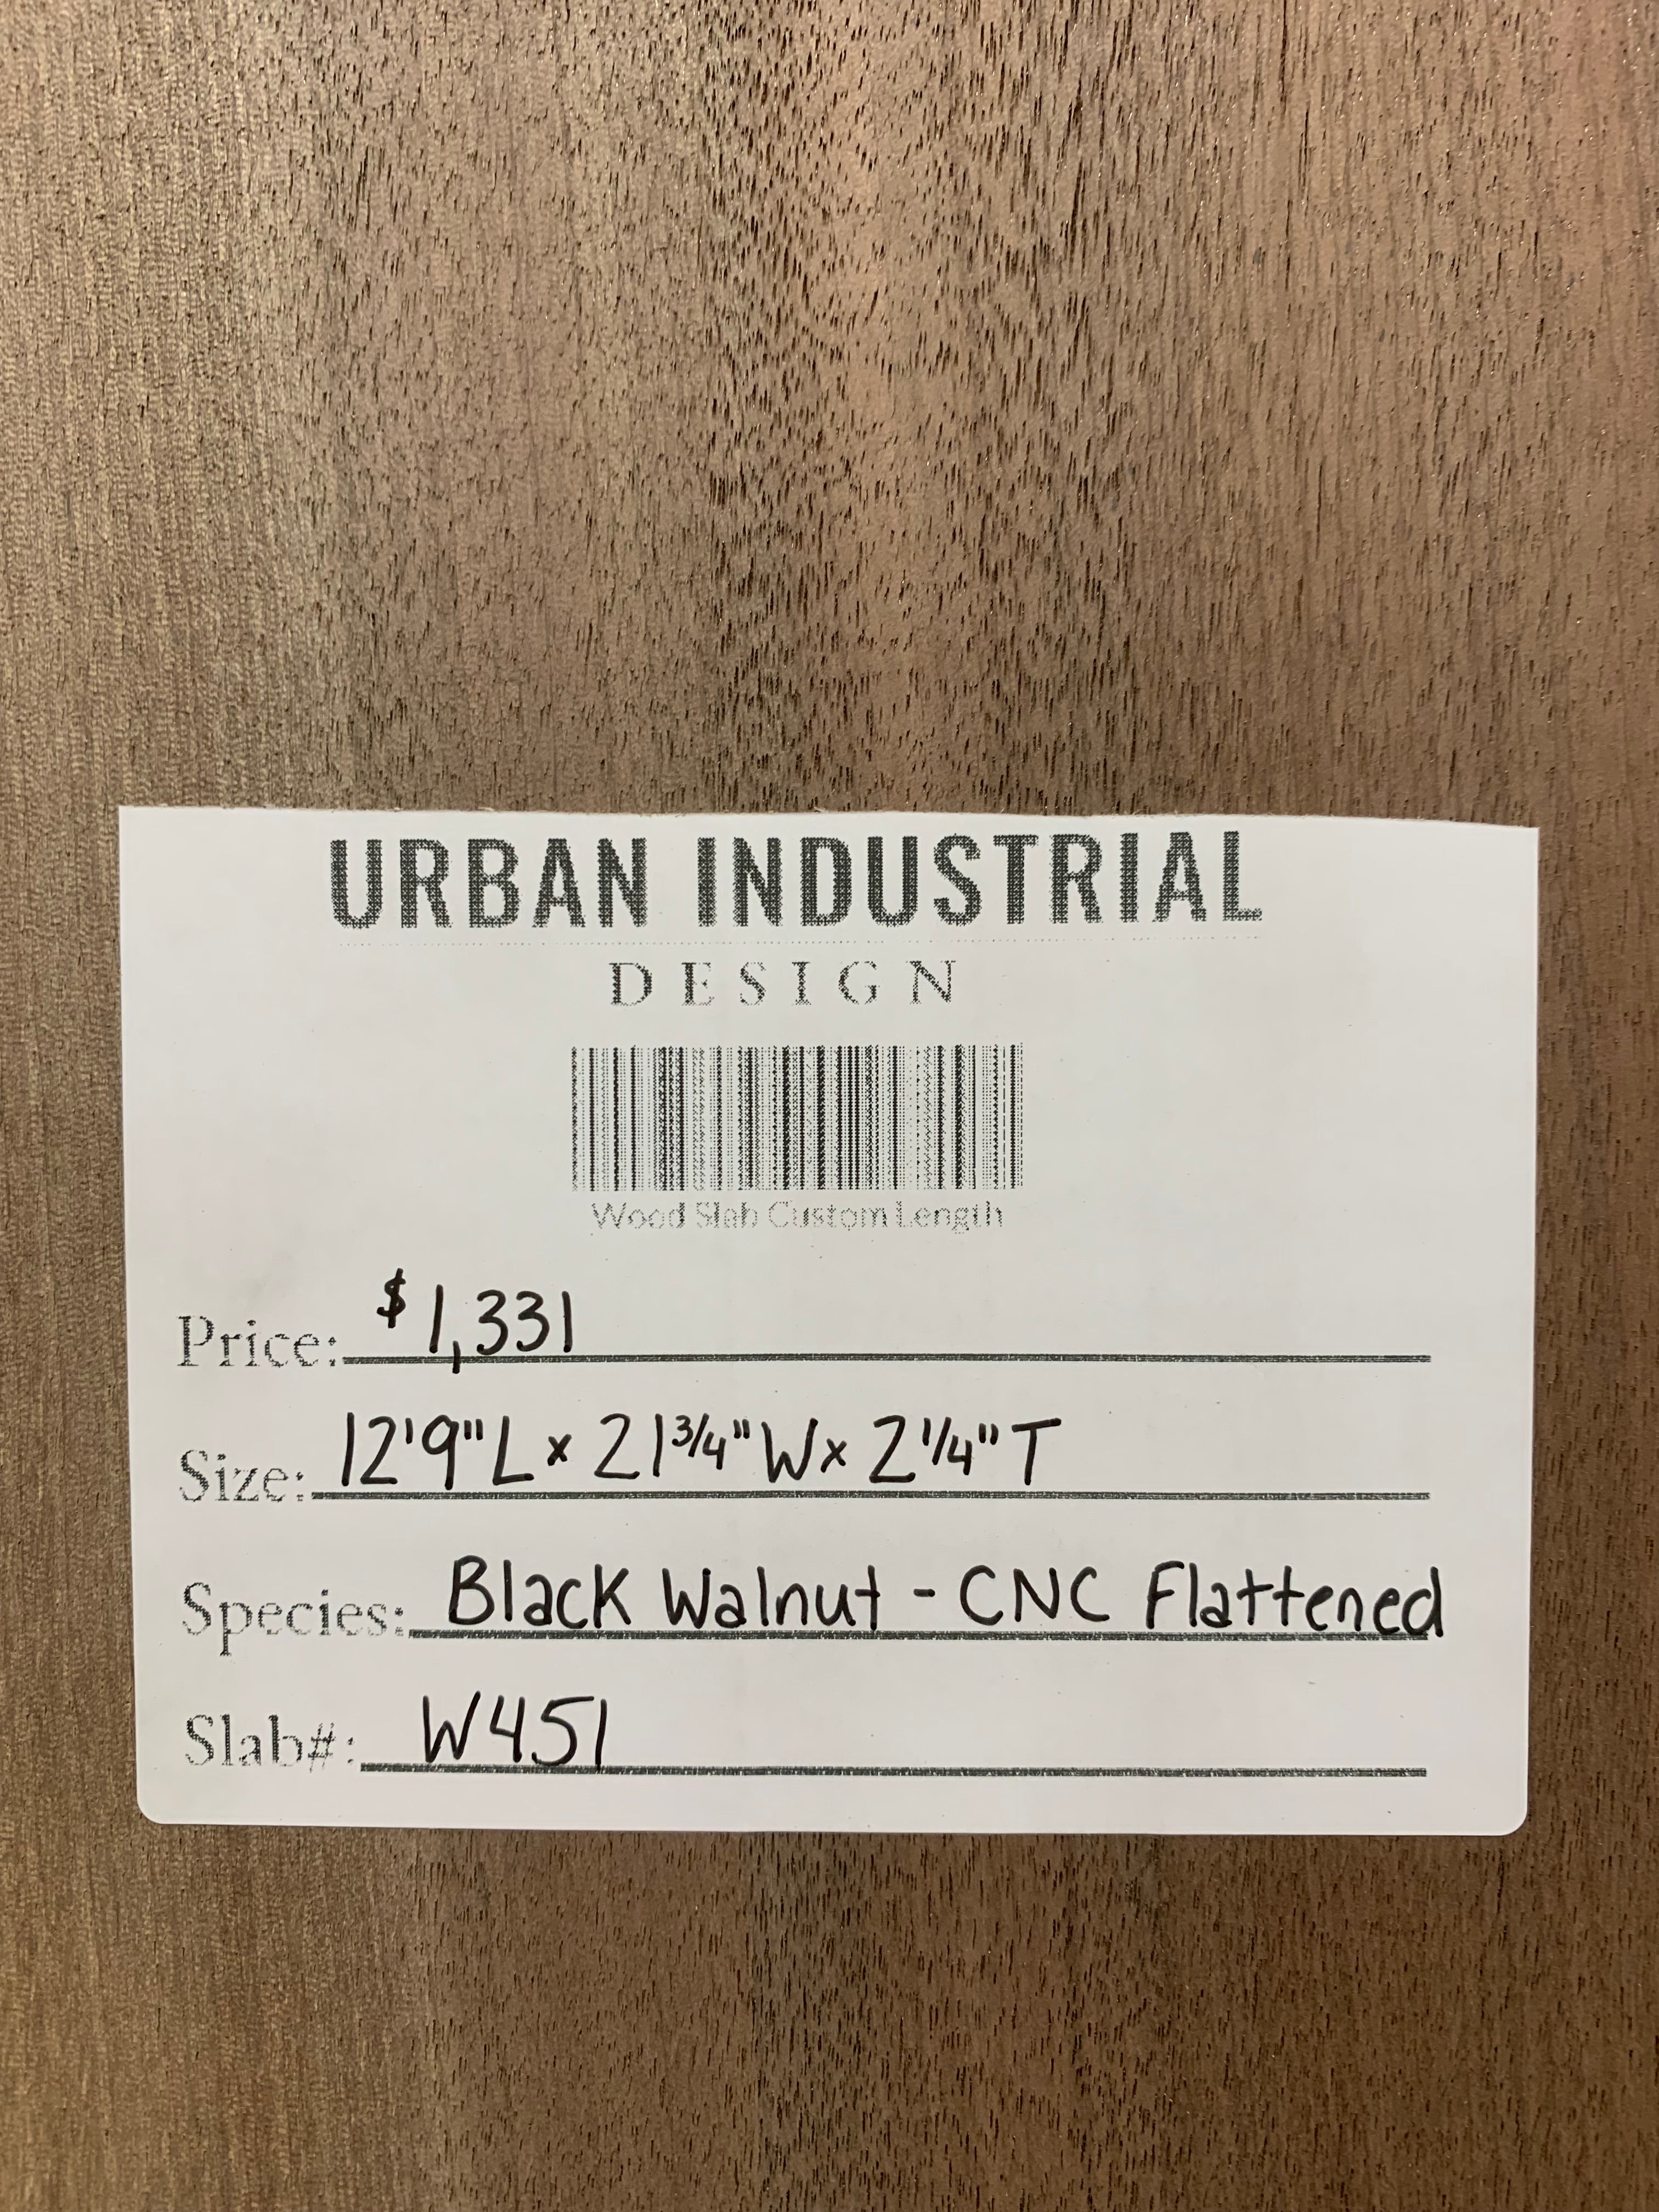 Black Walnut Slab - CNC Flattened | W451